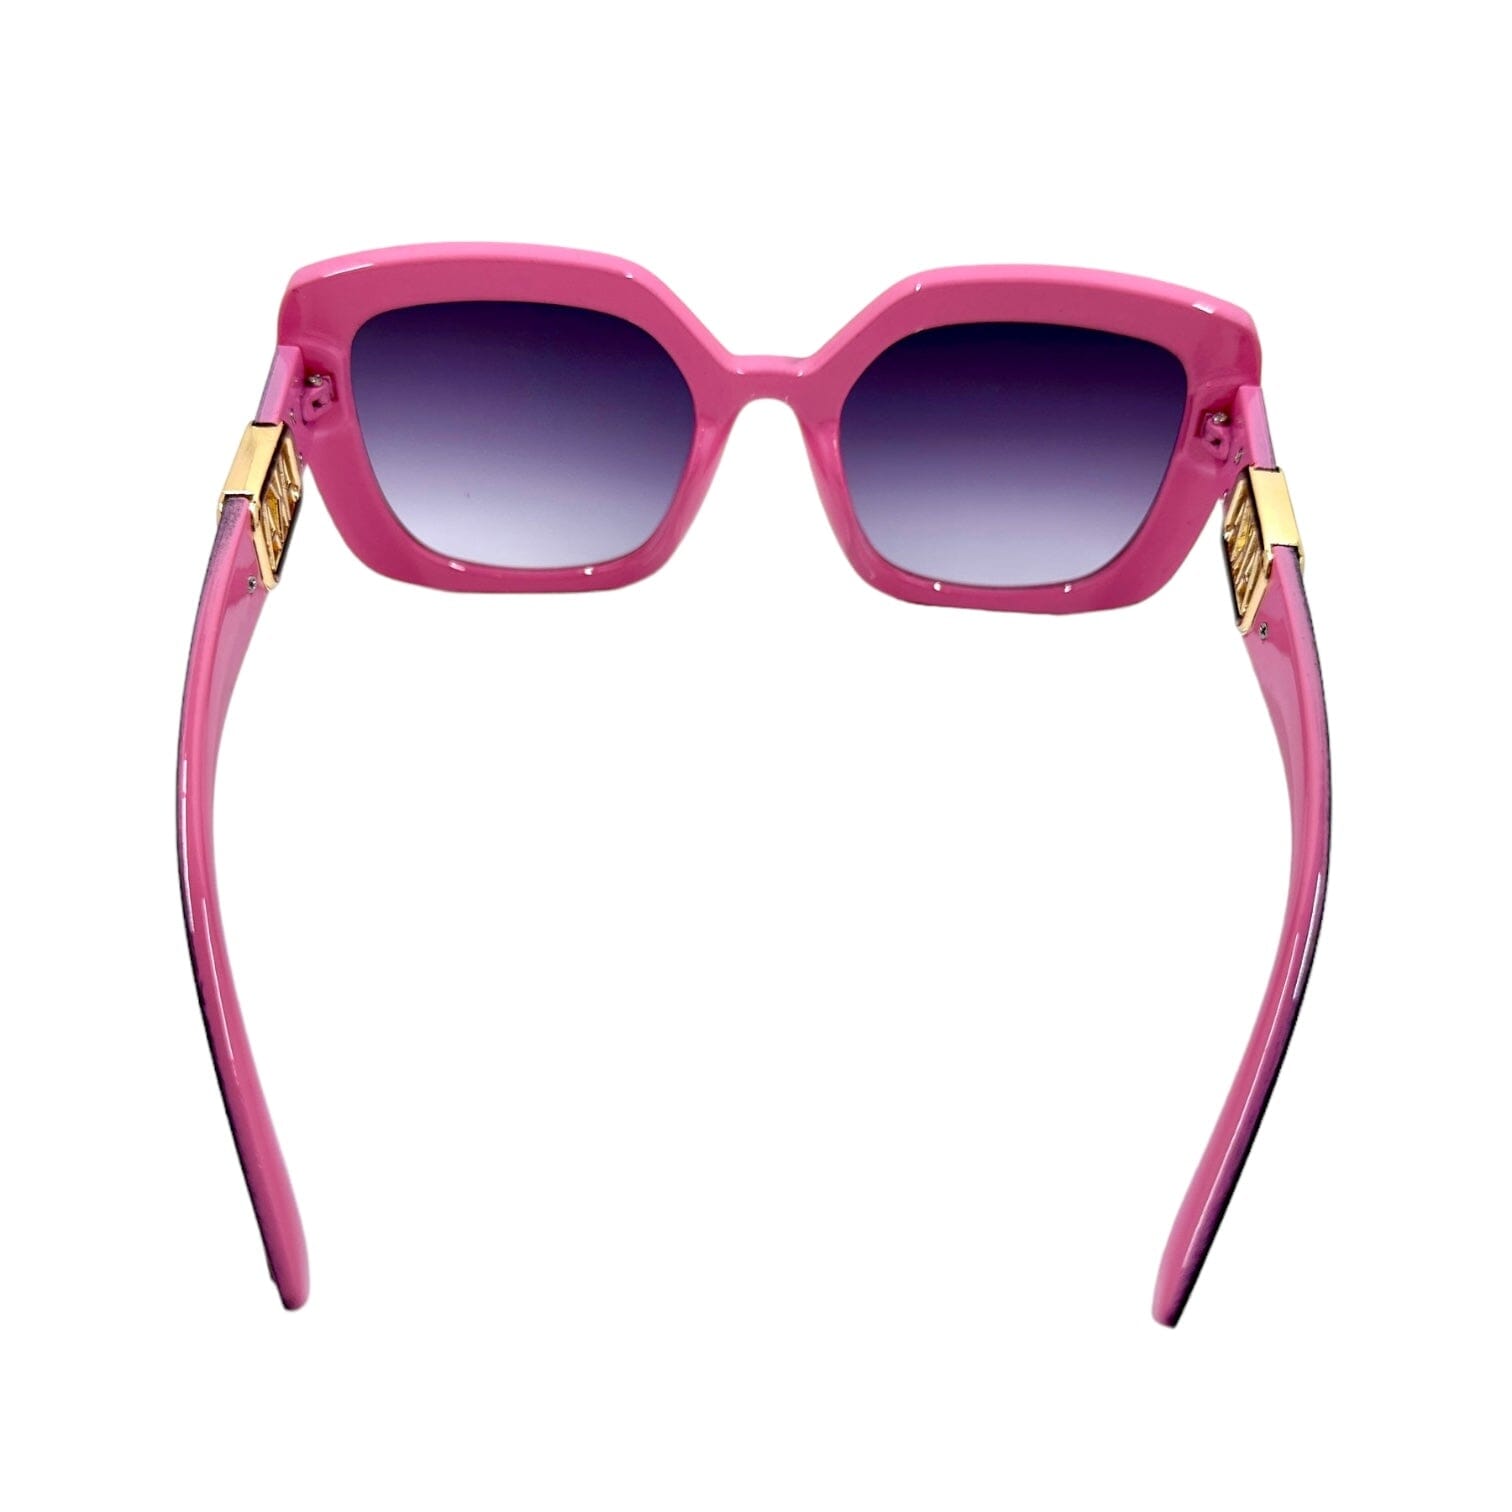 Pretty Girl AKA Sunglasses Sunglasses Trendzio Jewelry 